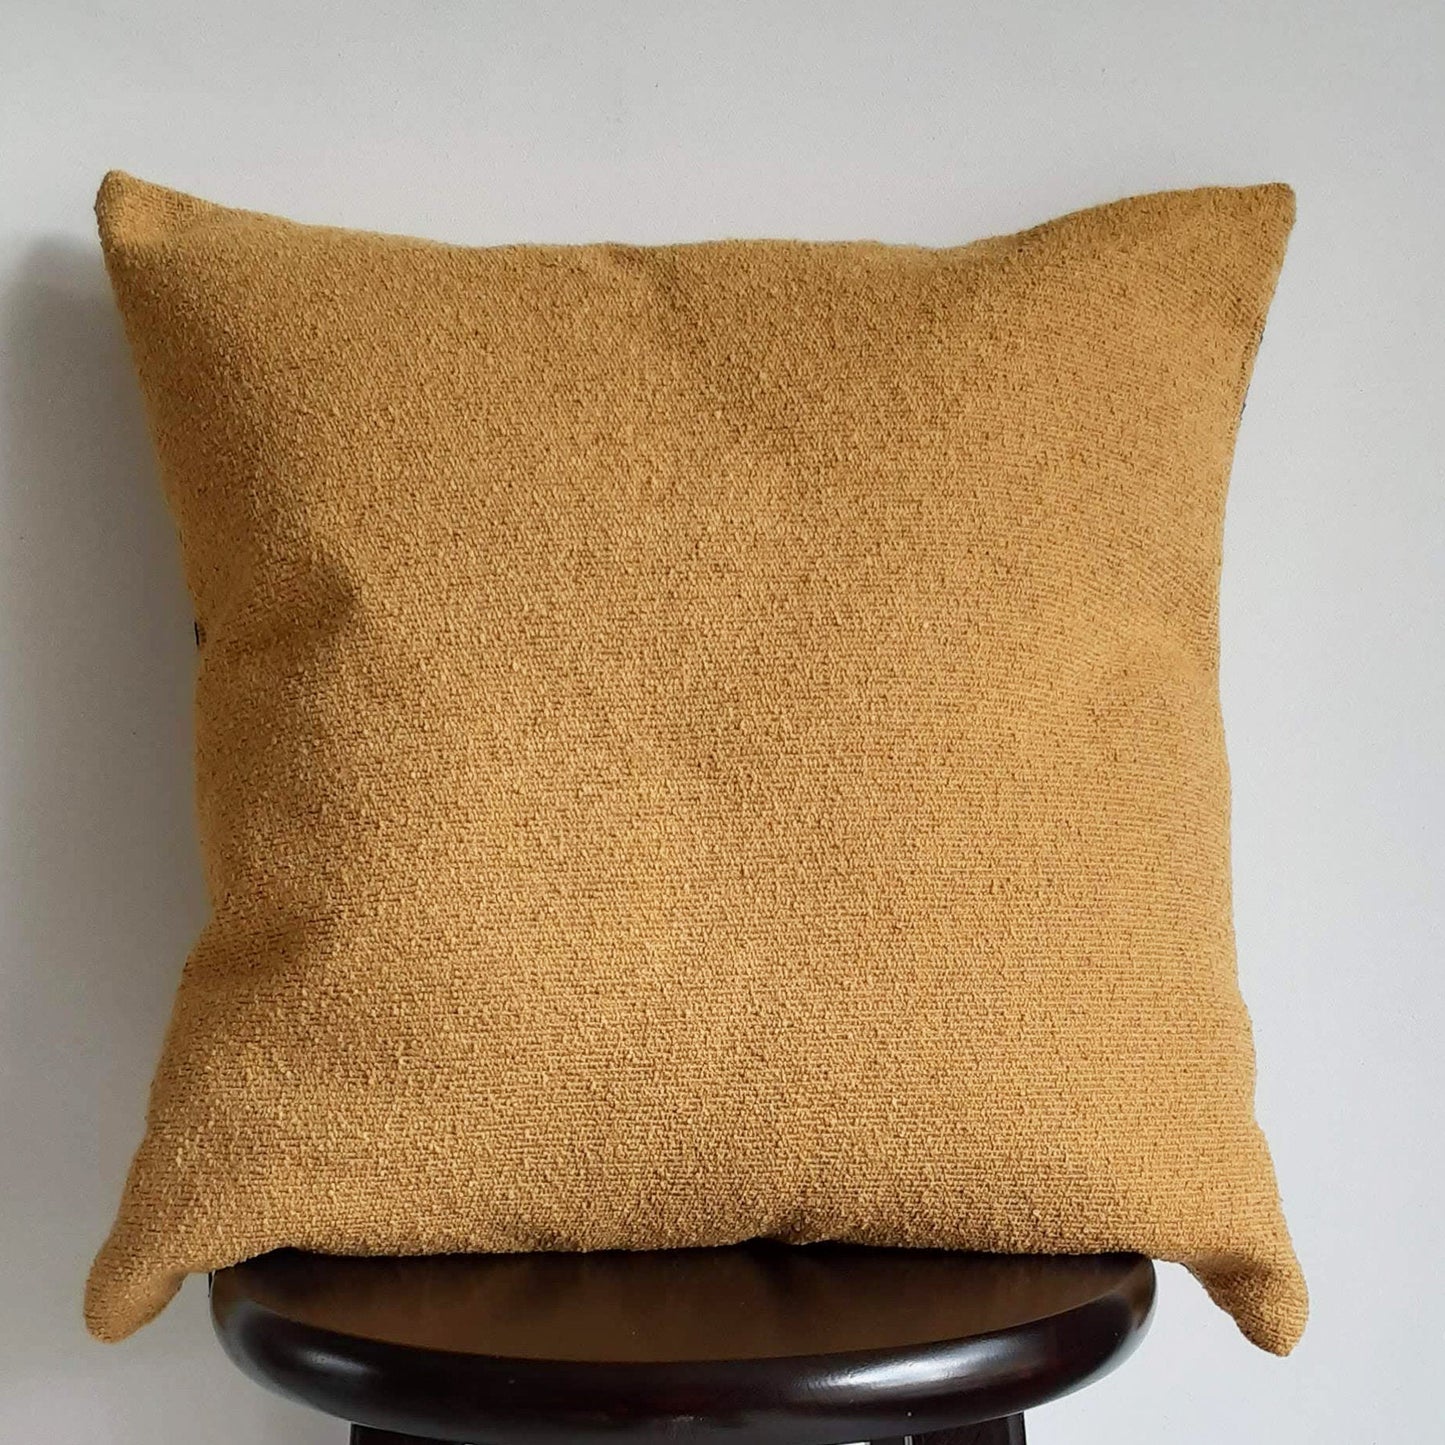 Modern Boho Farmhouse PIllow 18x18 Inch  Mustard Throw Pillow, African Adinkra Print, Ochre Golden Yellow Textured Pillows